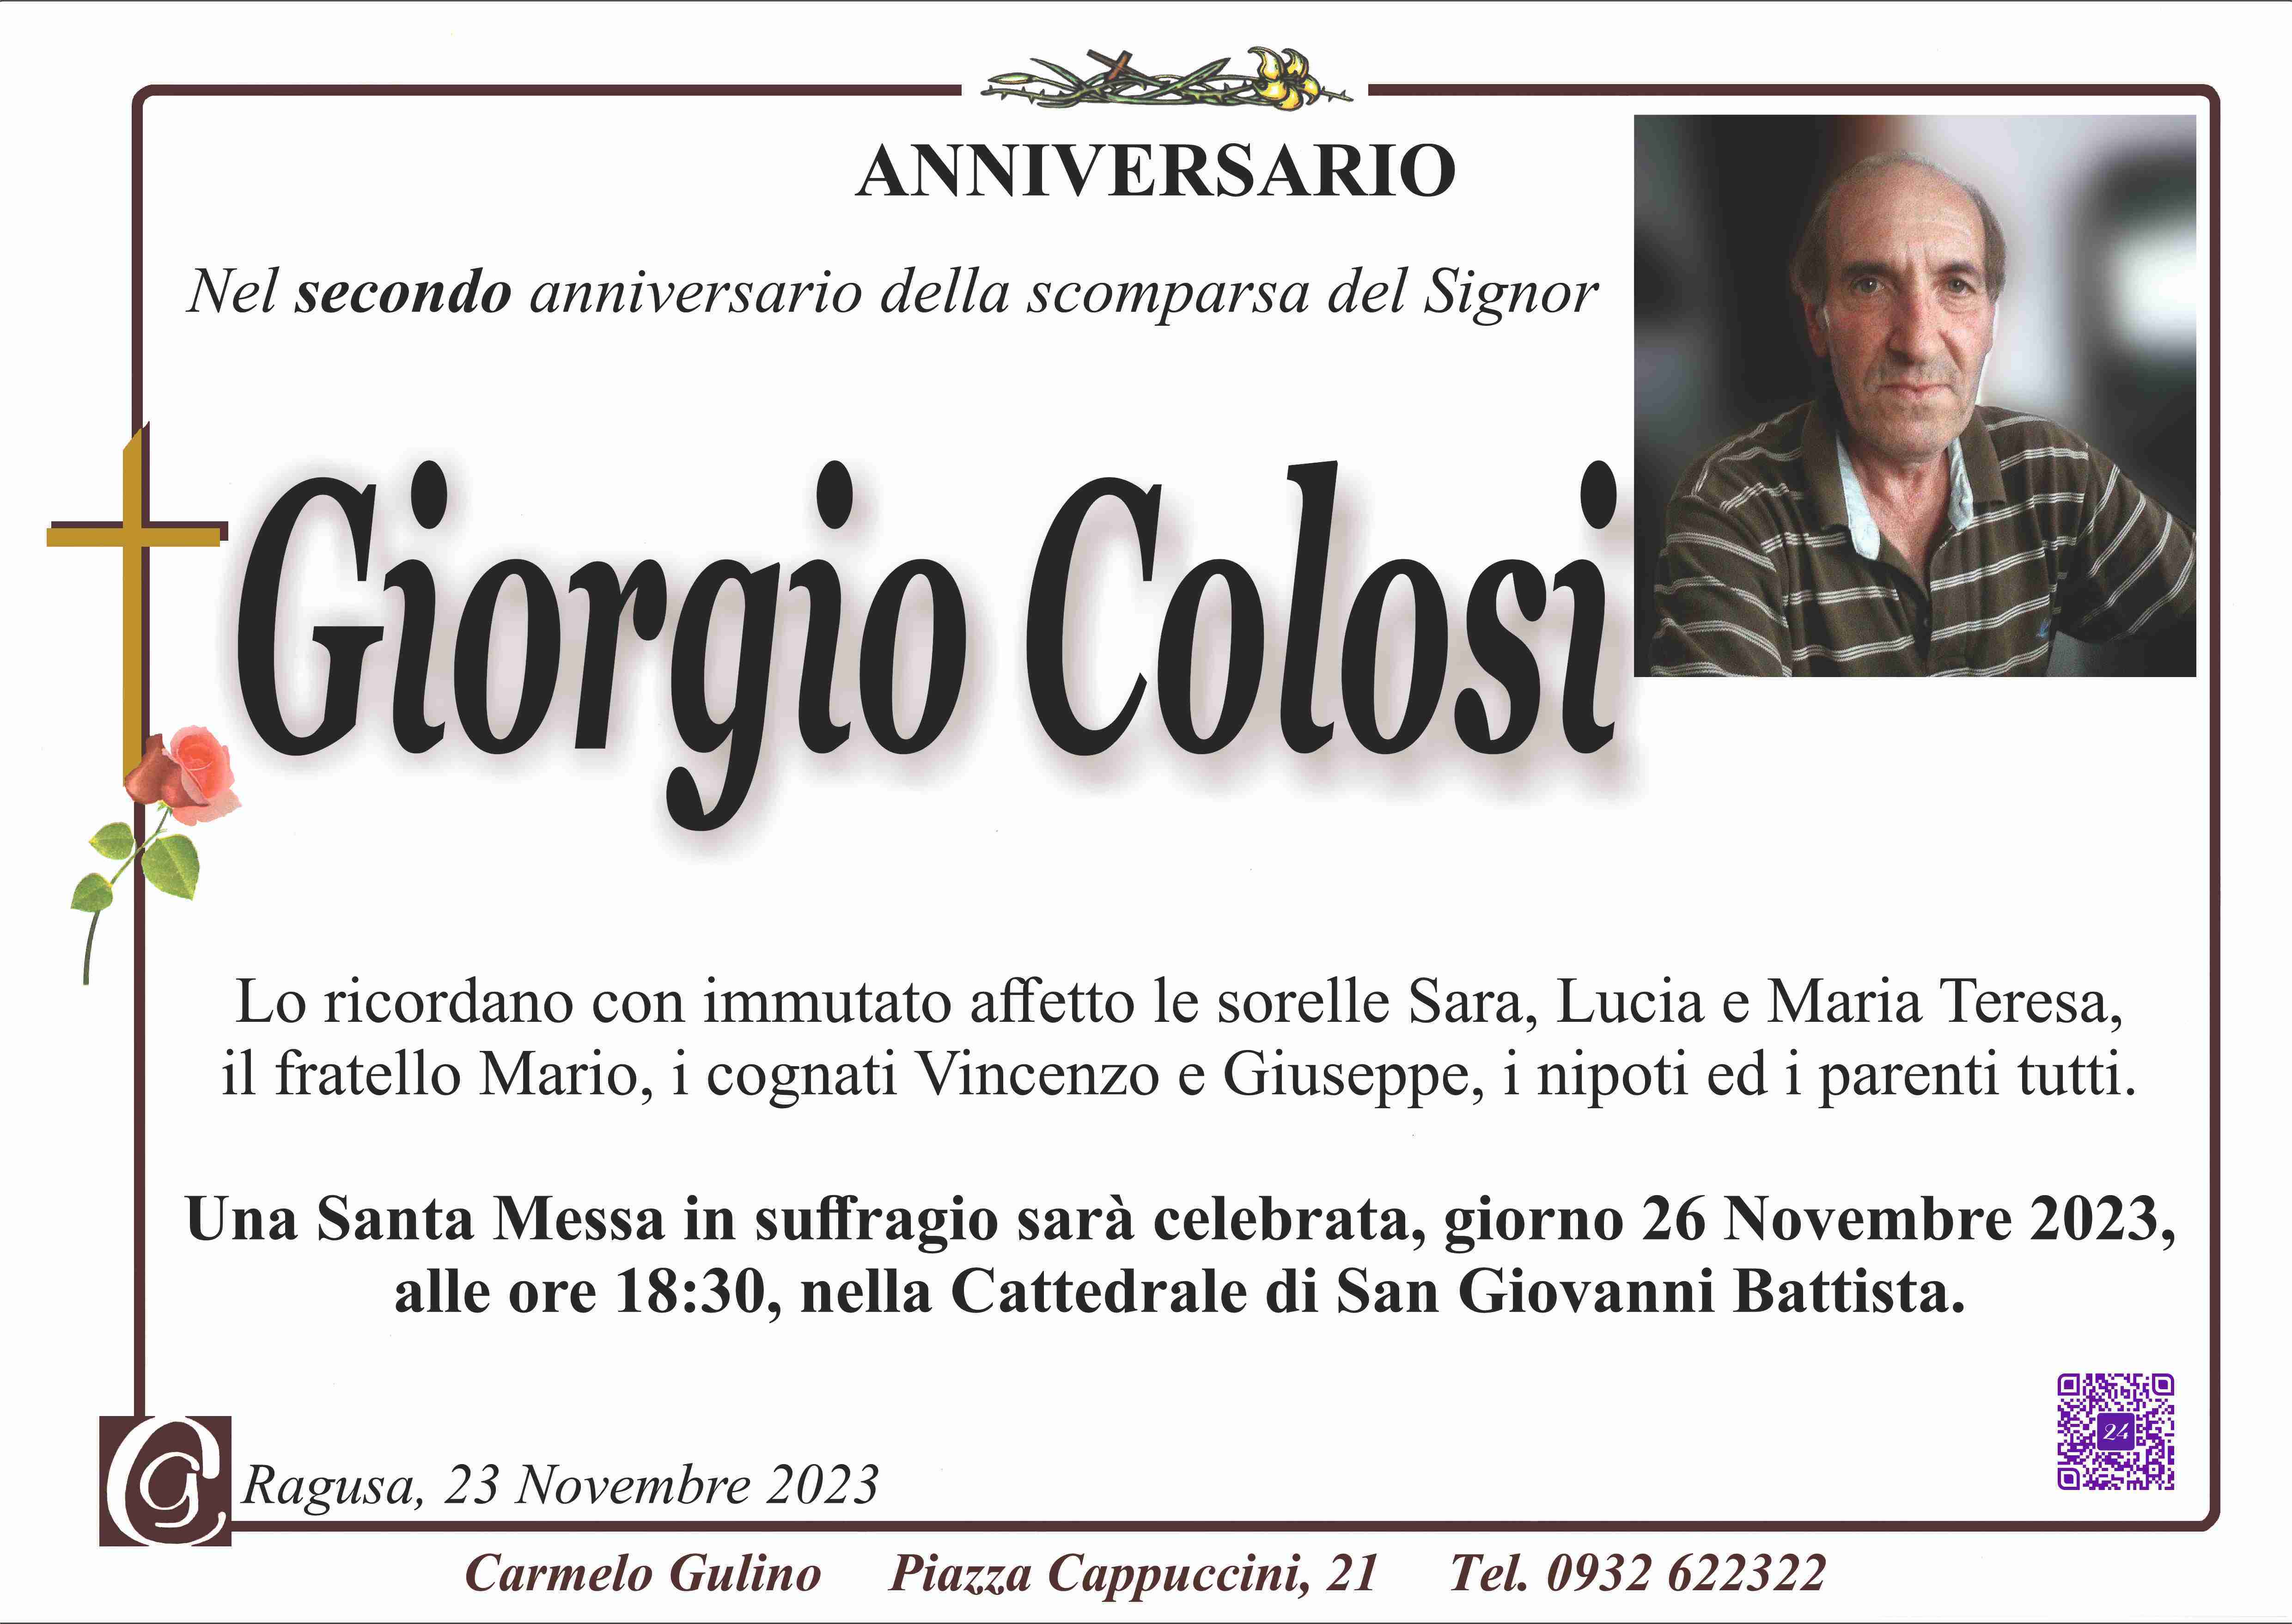 Giorgio Colosi